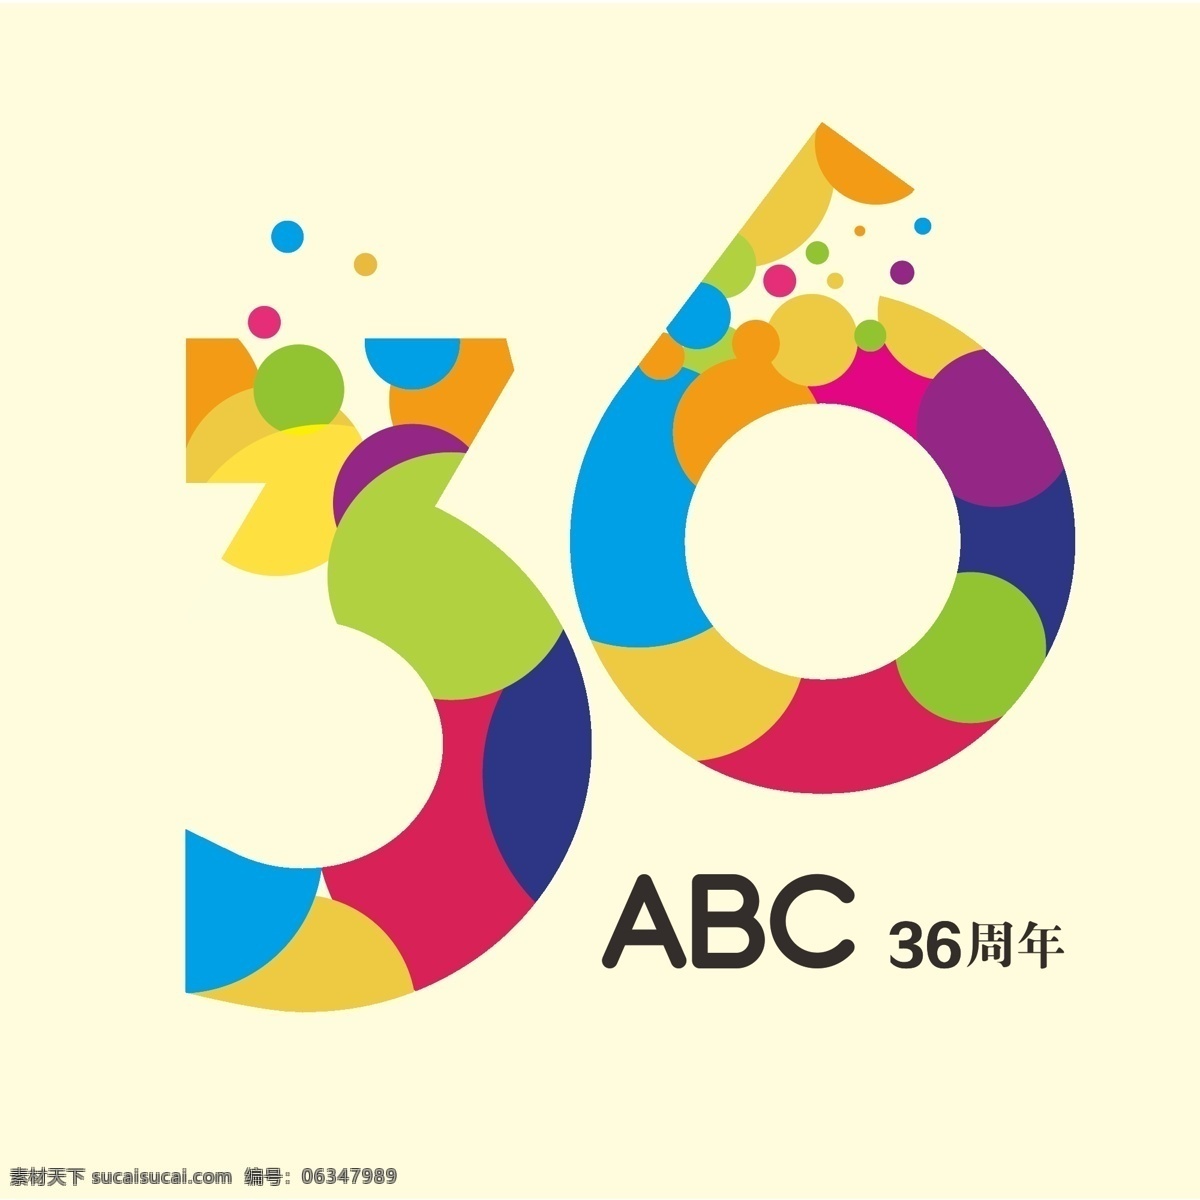 周年庆 logo 节日 活动 标志图标 公共标识标志